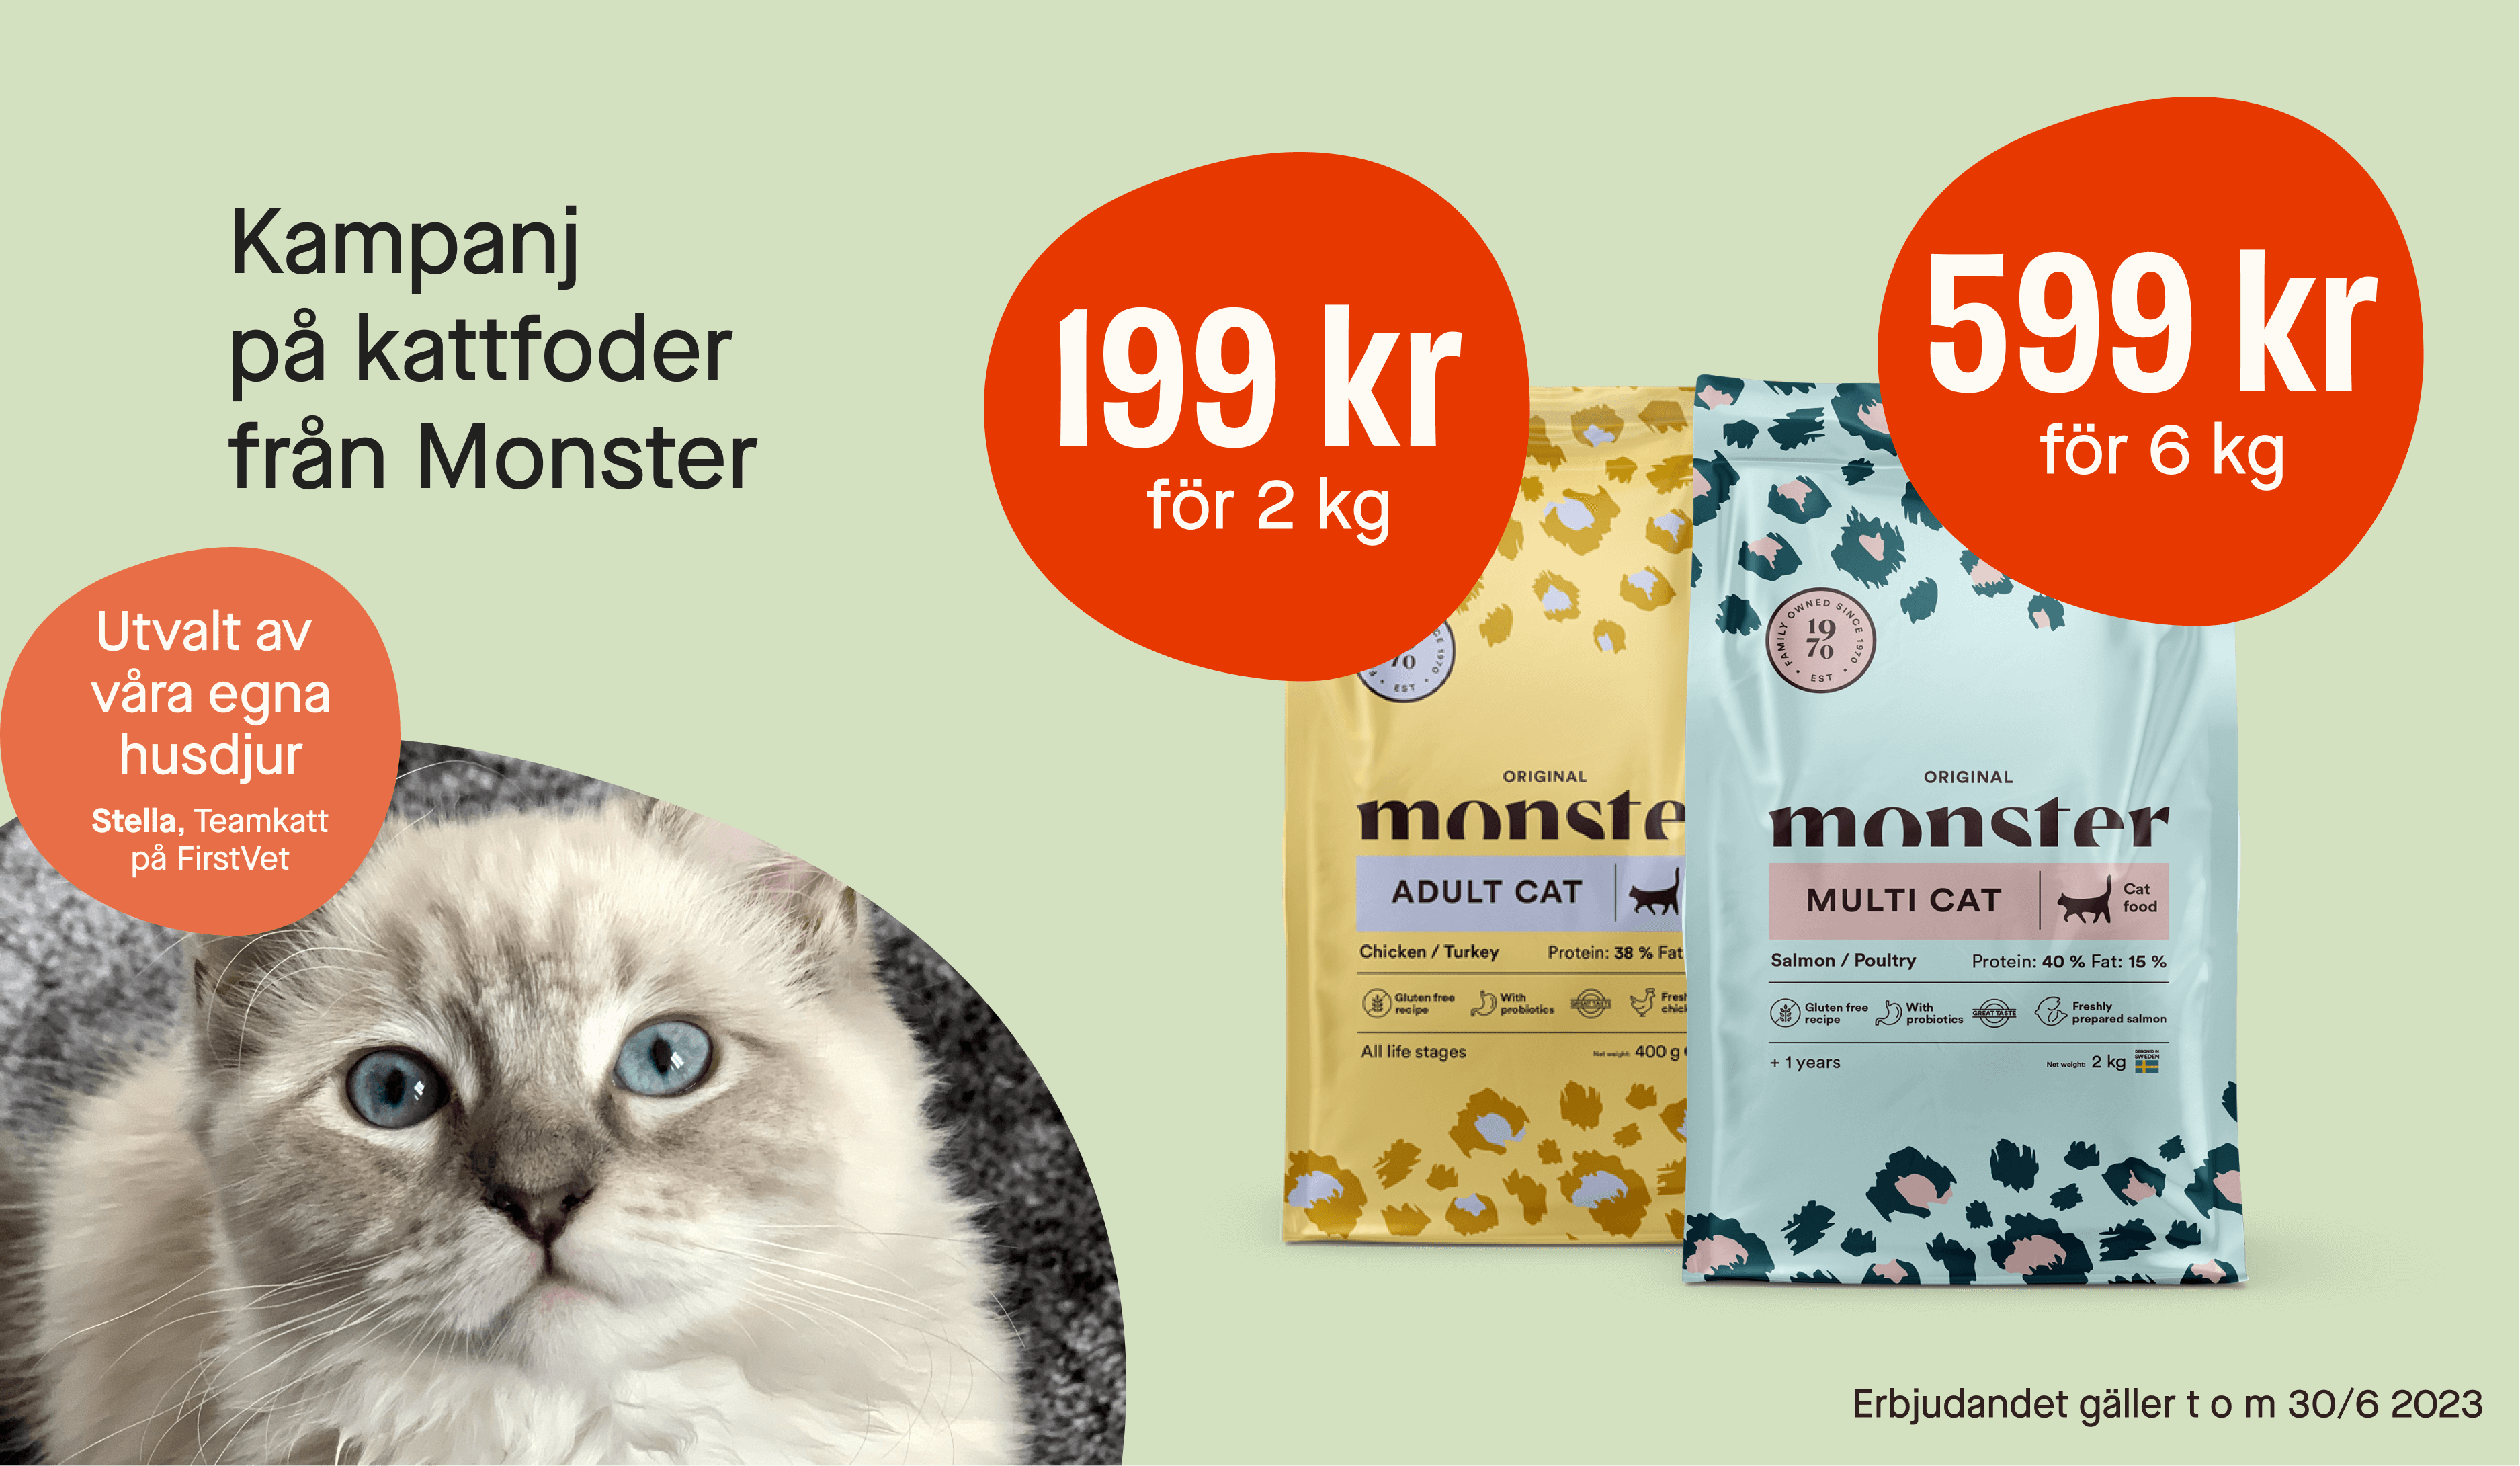 Kampanj på Monster kattfoder 2 kg, 199 kr, 6 kg 599 kr